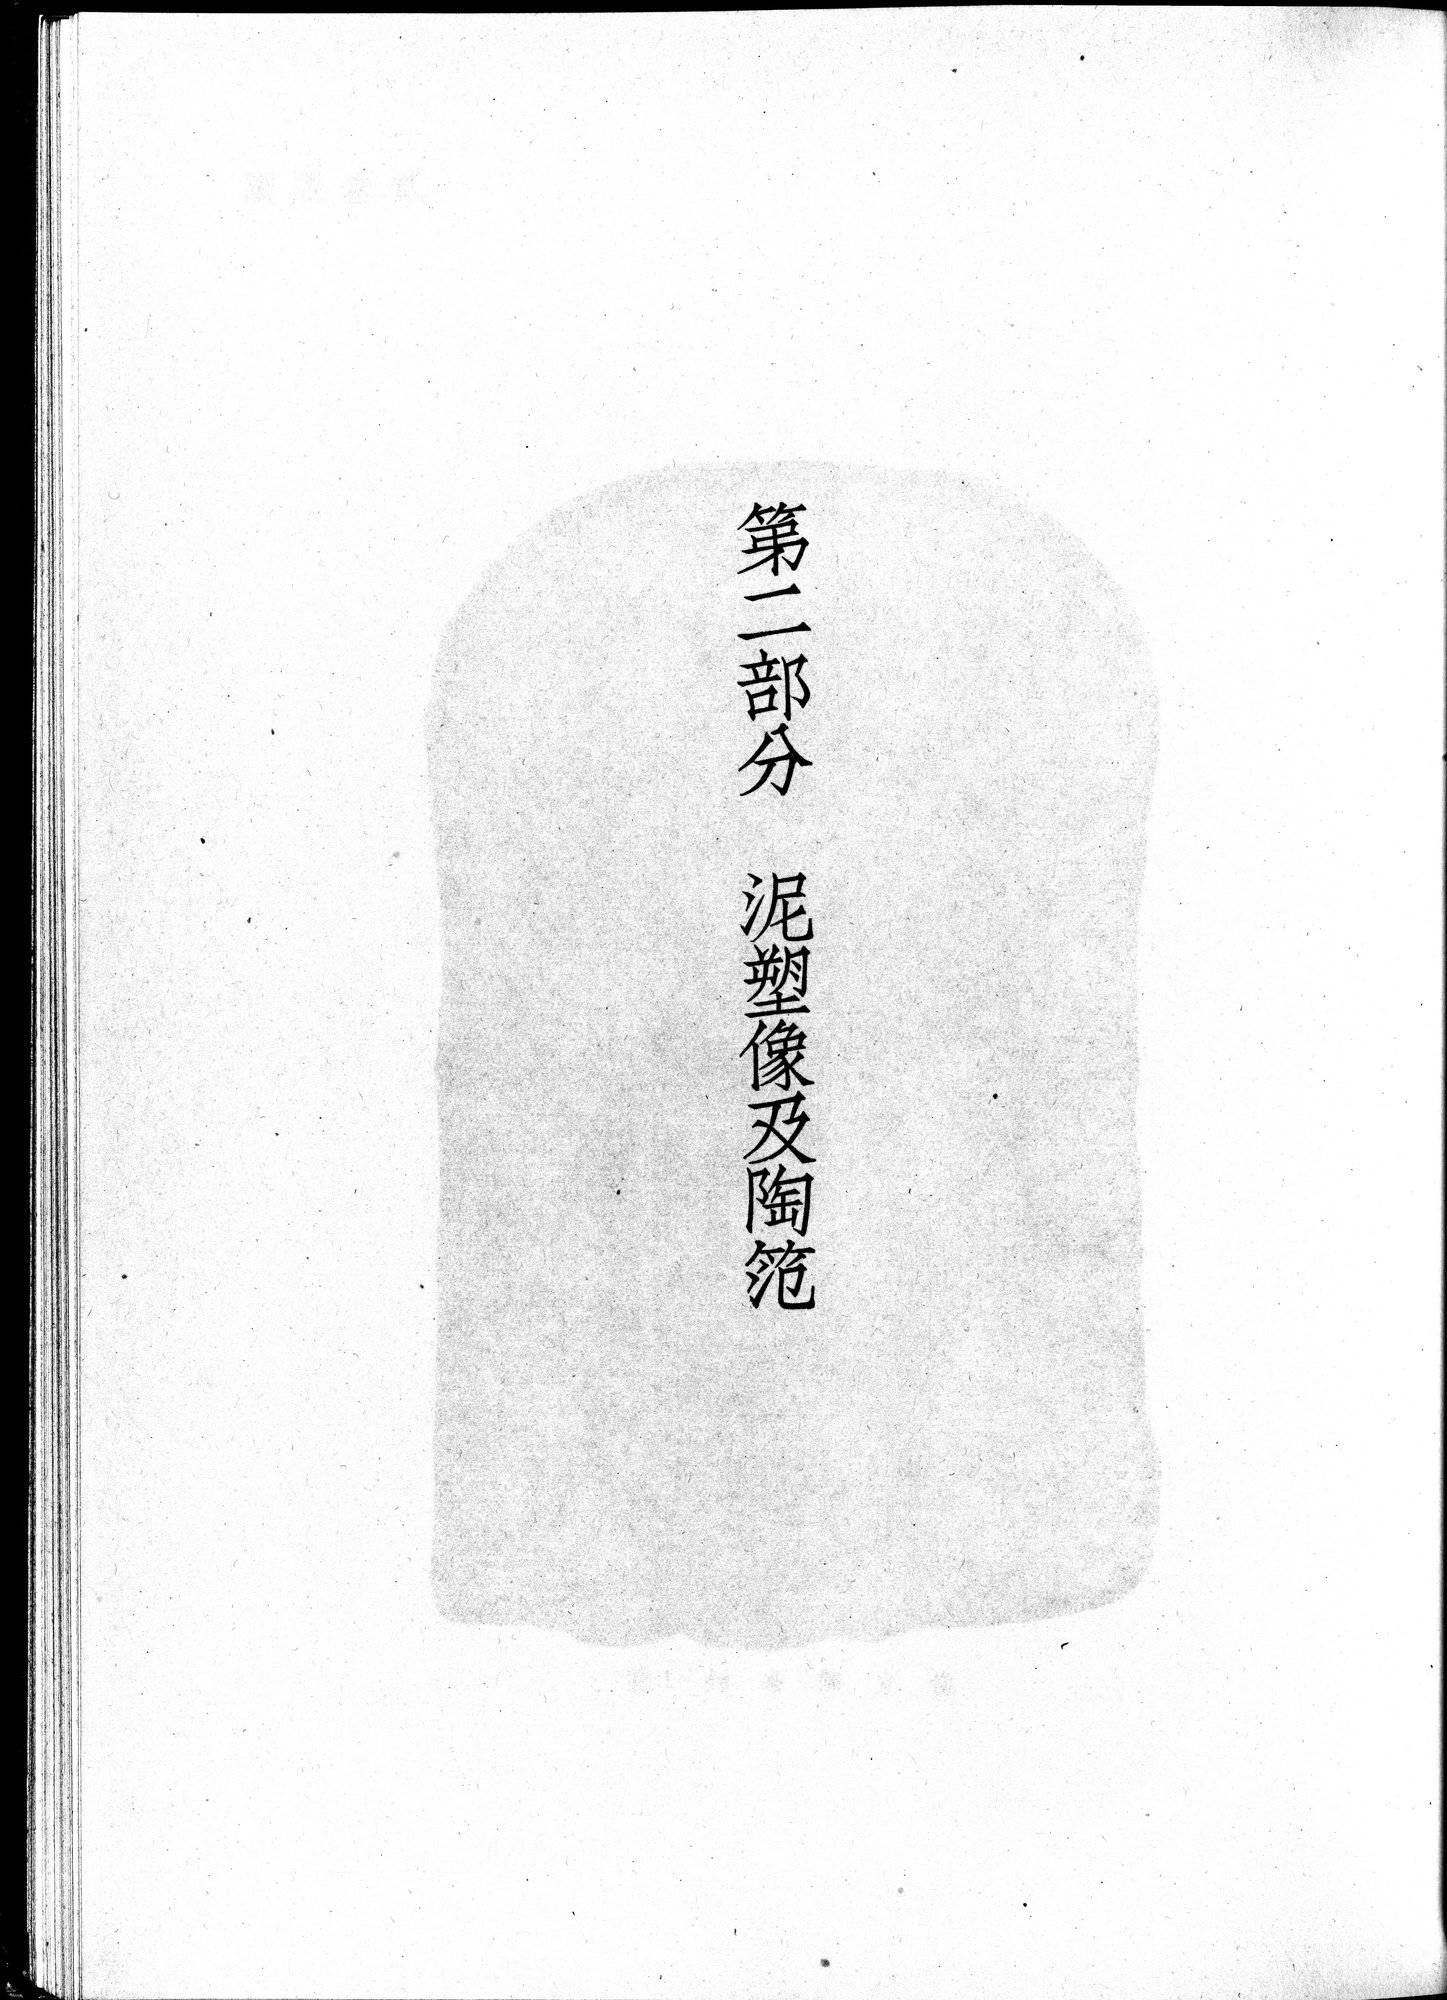 塔里木盆地考古記 : vol.1 / Page 253 (Grayscale High Resolution Image)